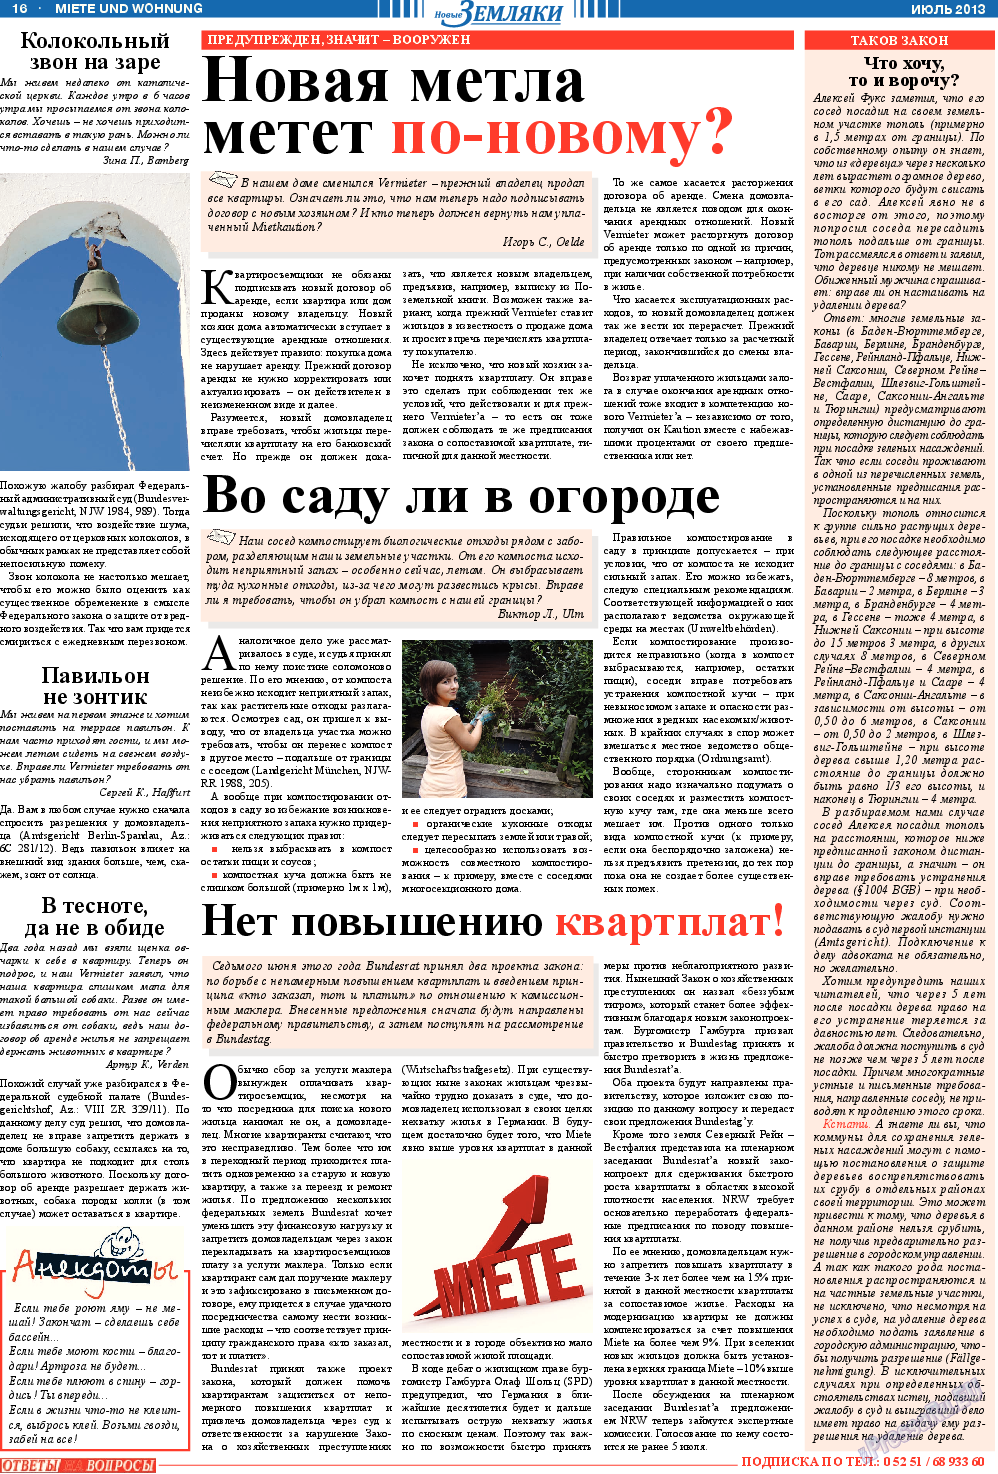 Новые Земляки, газета. 2013 №7 стр.16